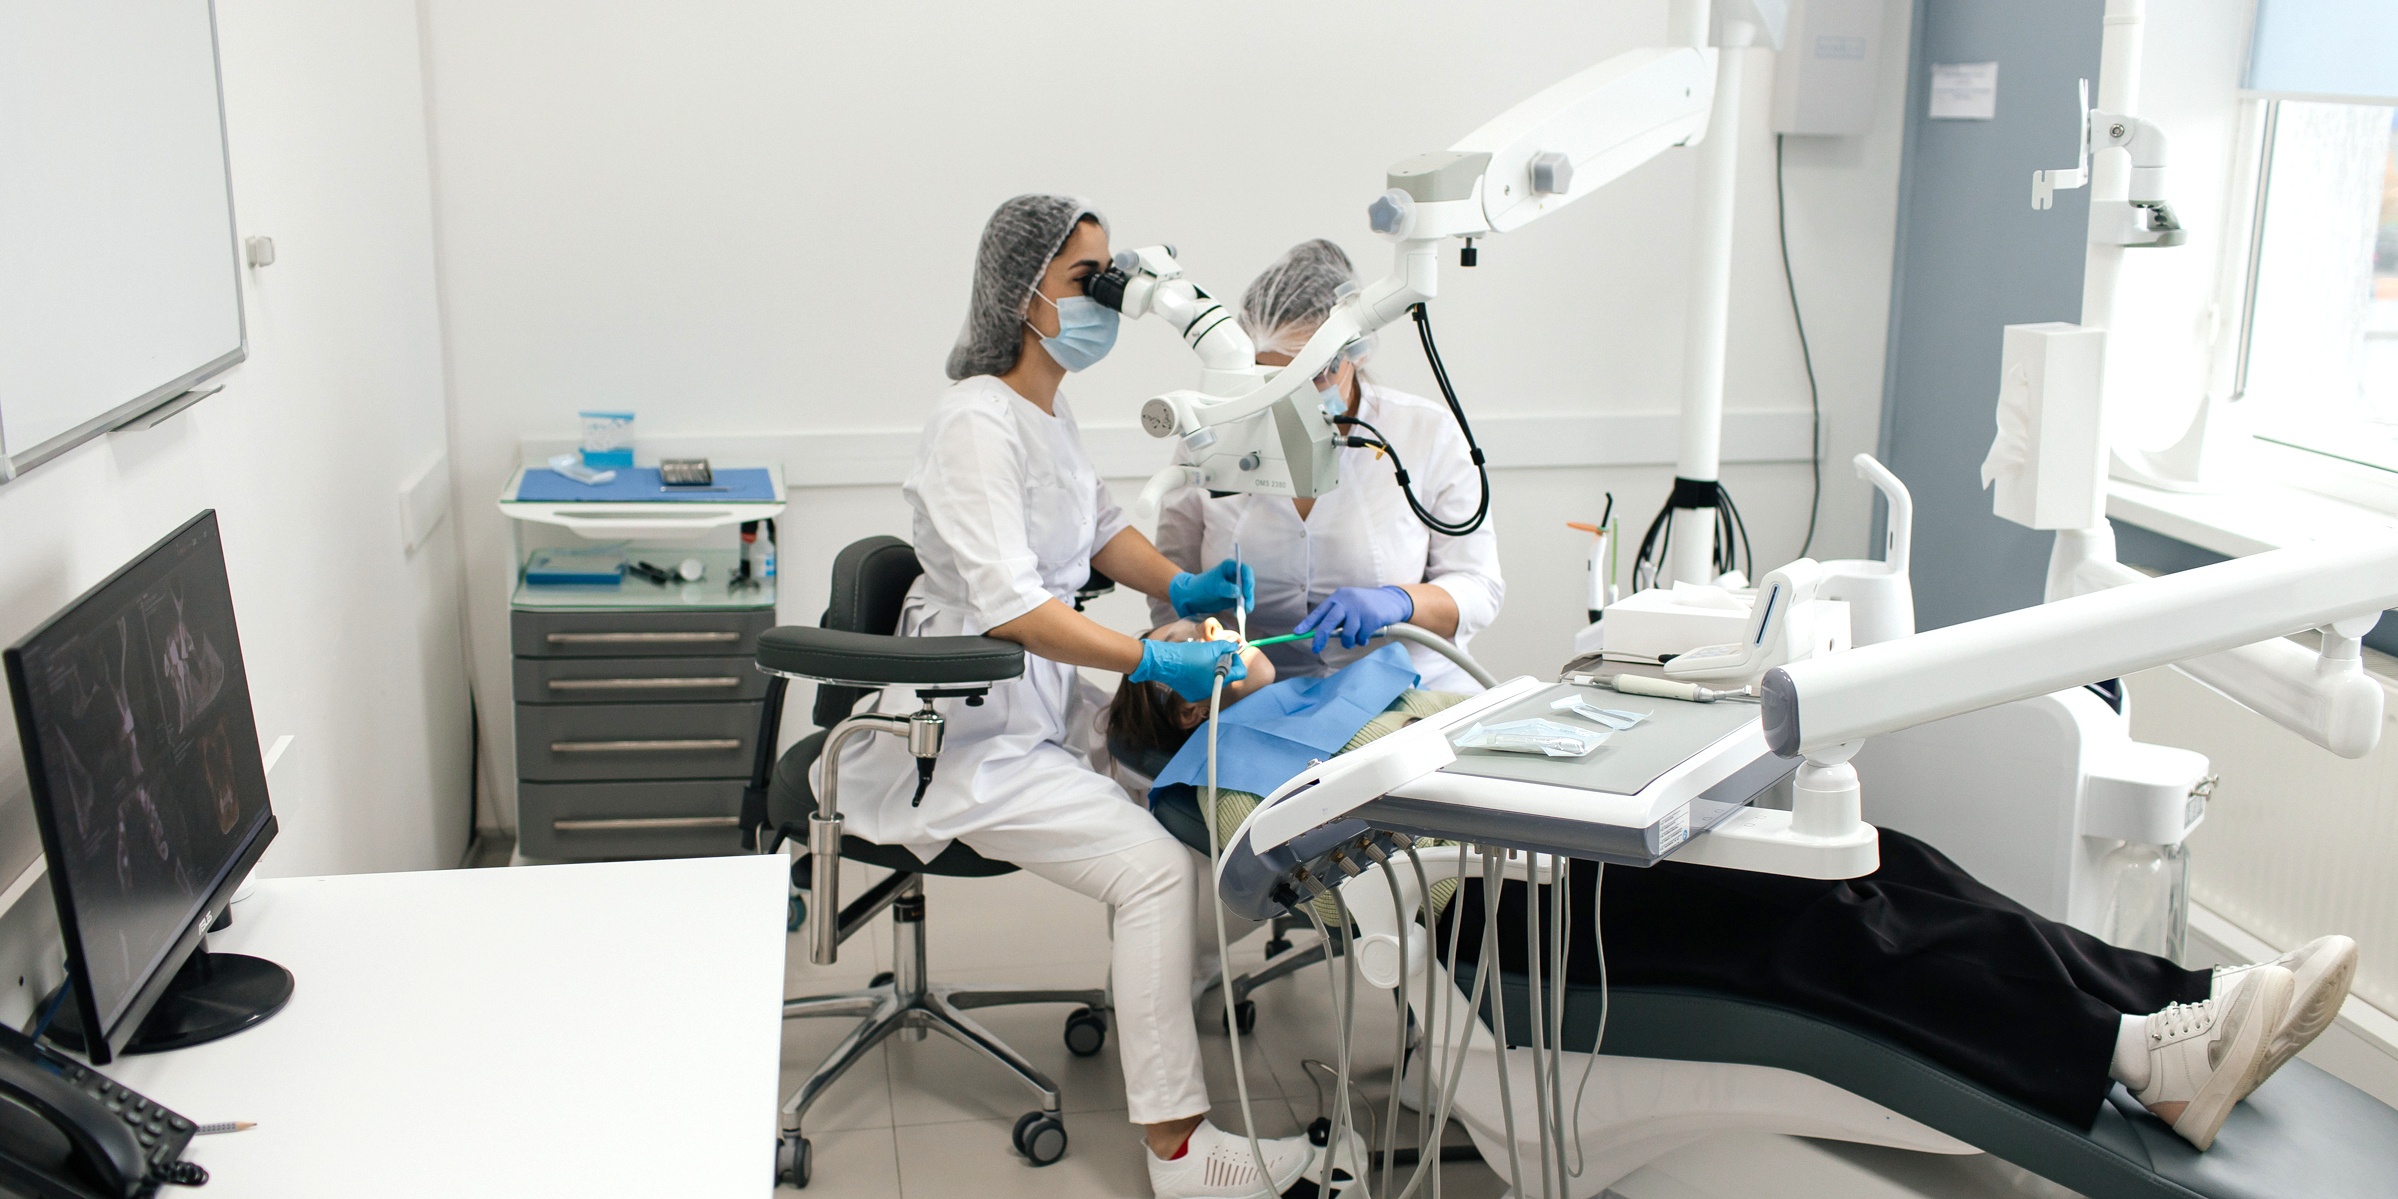 стоматолог с ассистентом проводят терапевтическое лечение зубов под микроскопом